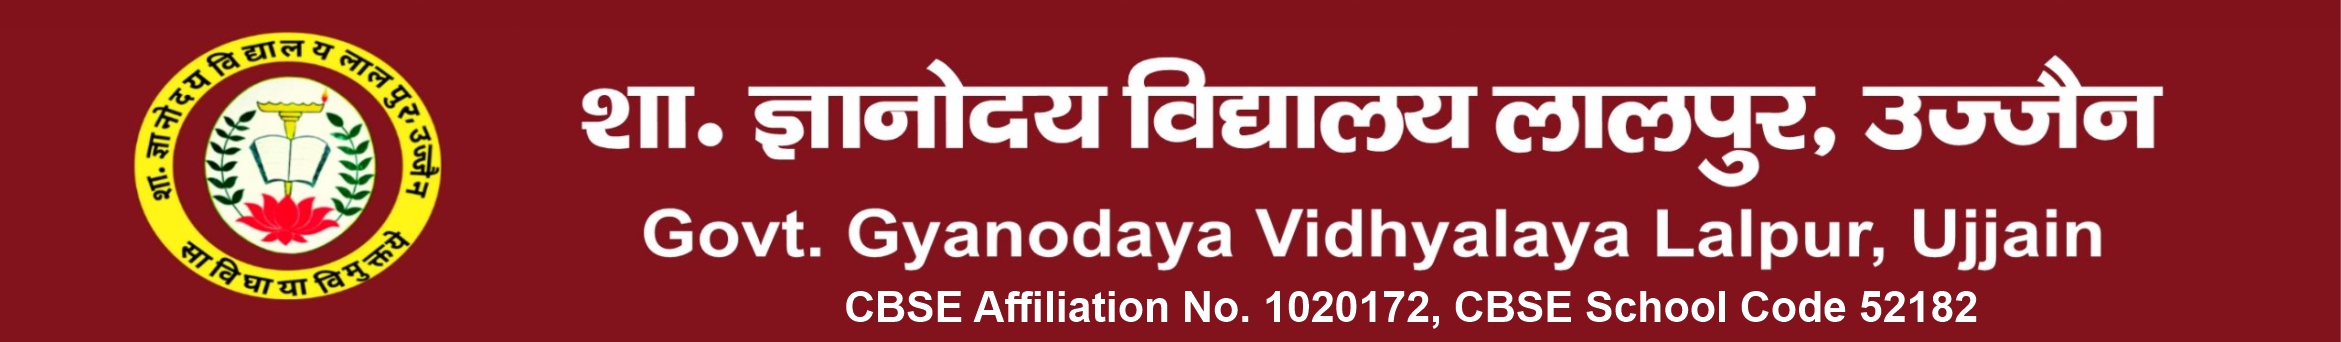 Govt. Gyanodaya Vidhyalaya Lalpur, Ujjain – शा. ज्ञानोदय विद्यालय लालपुर, उज्जैन